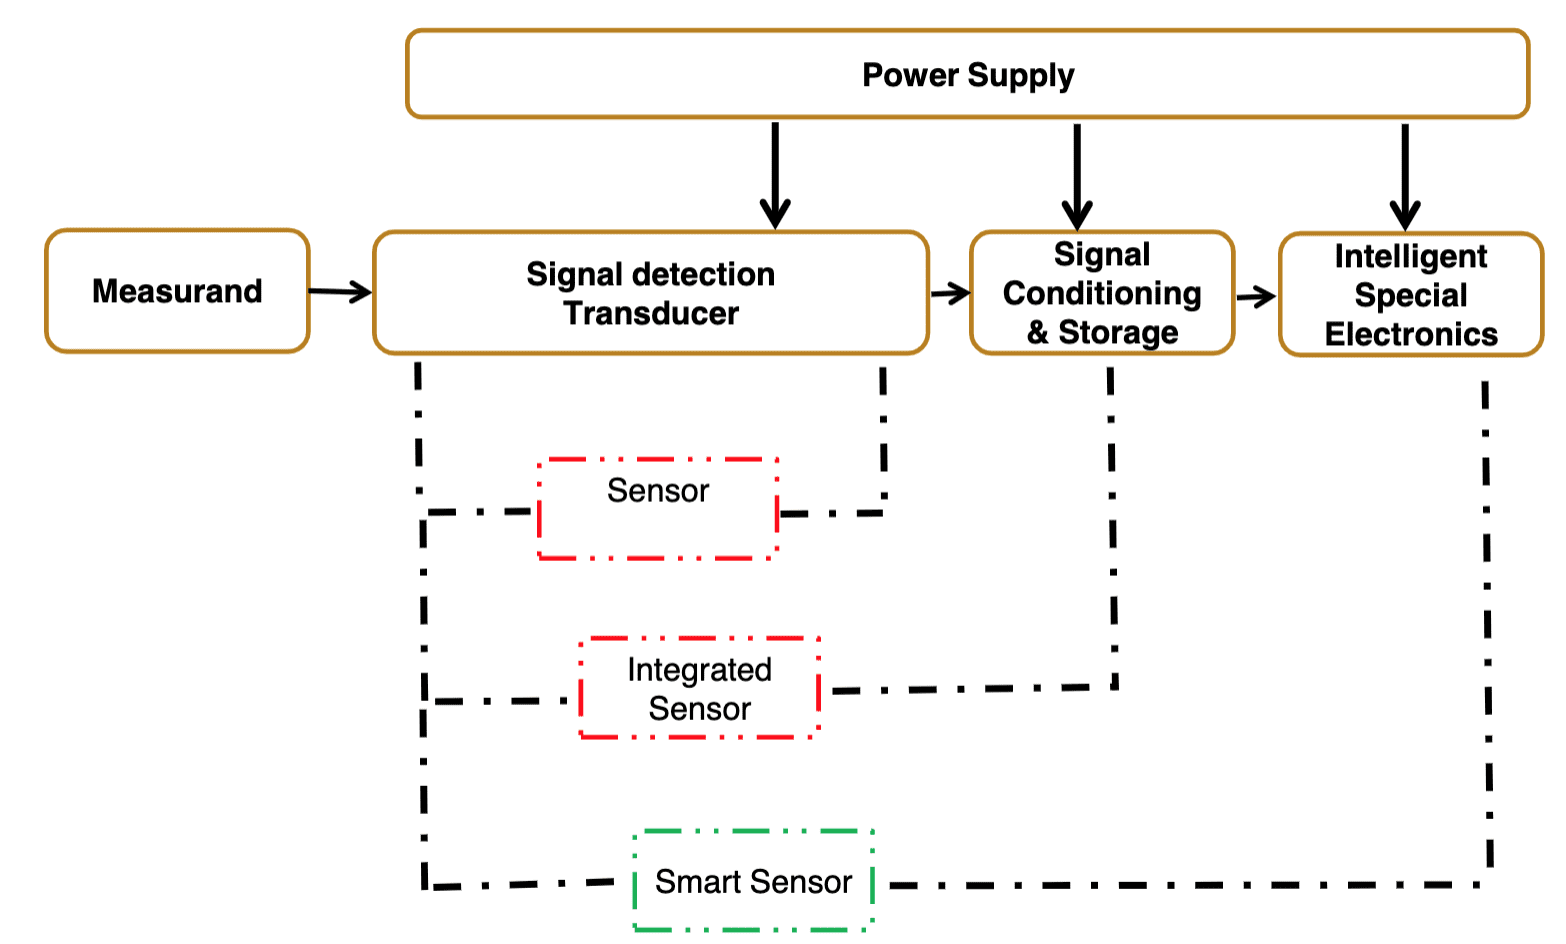 smart sensors